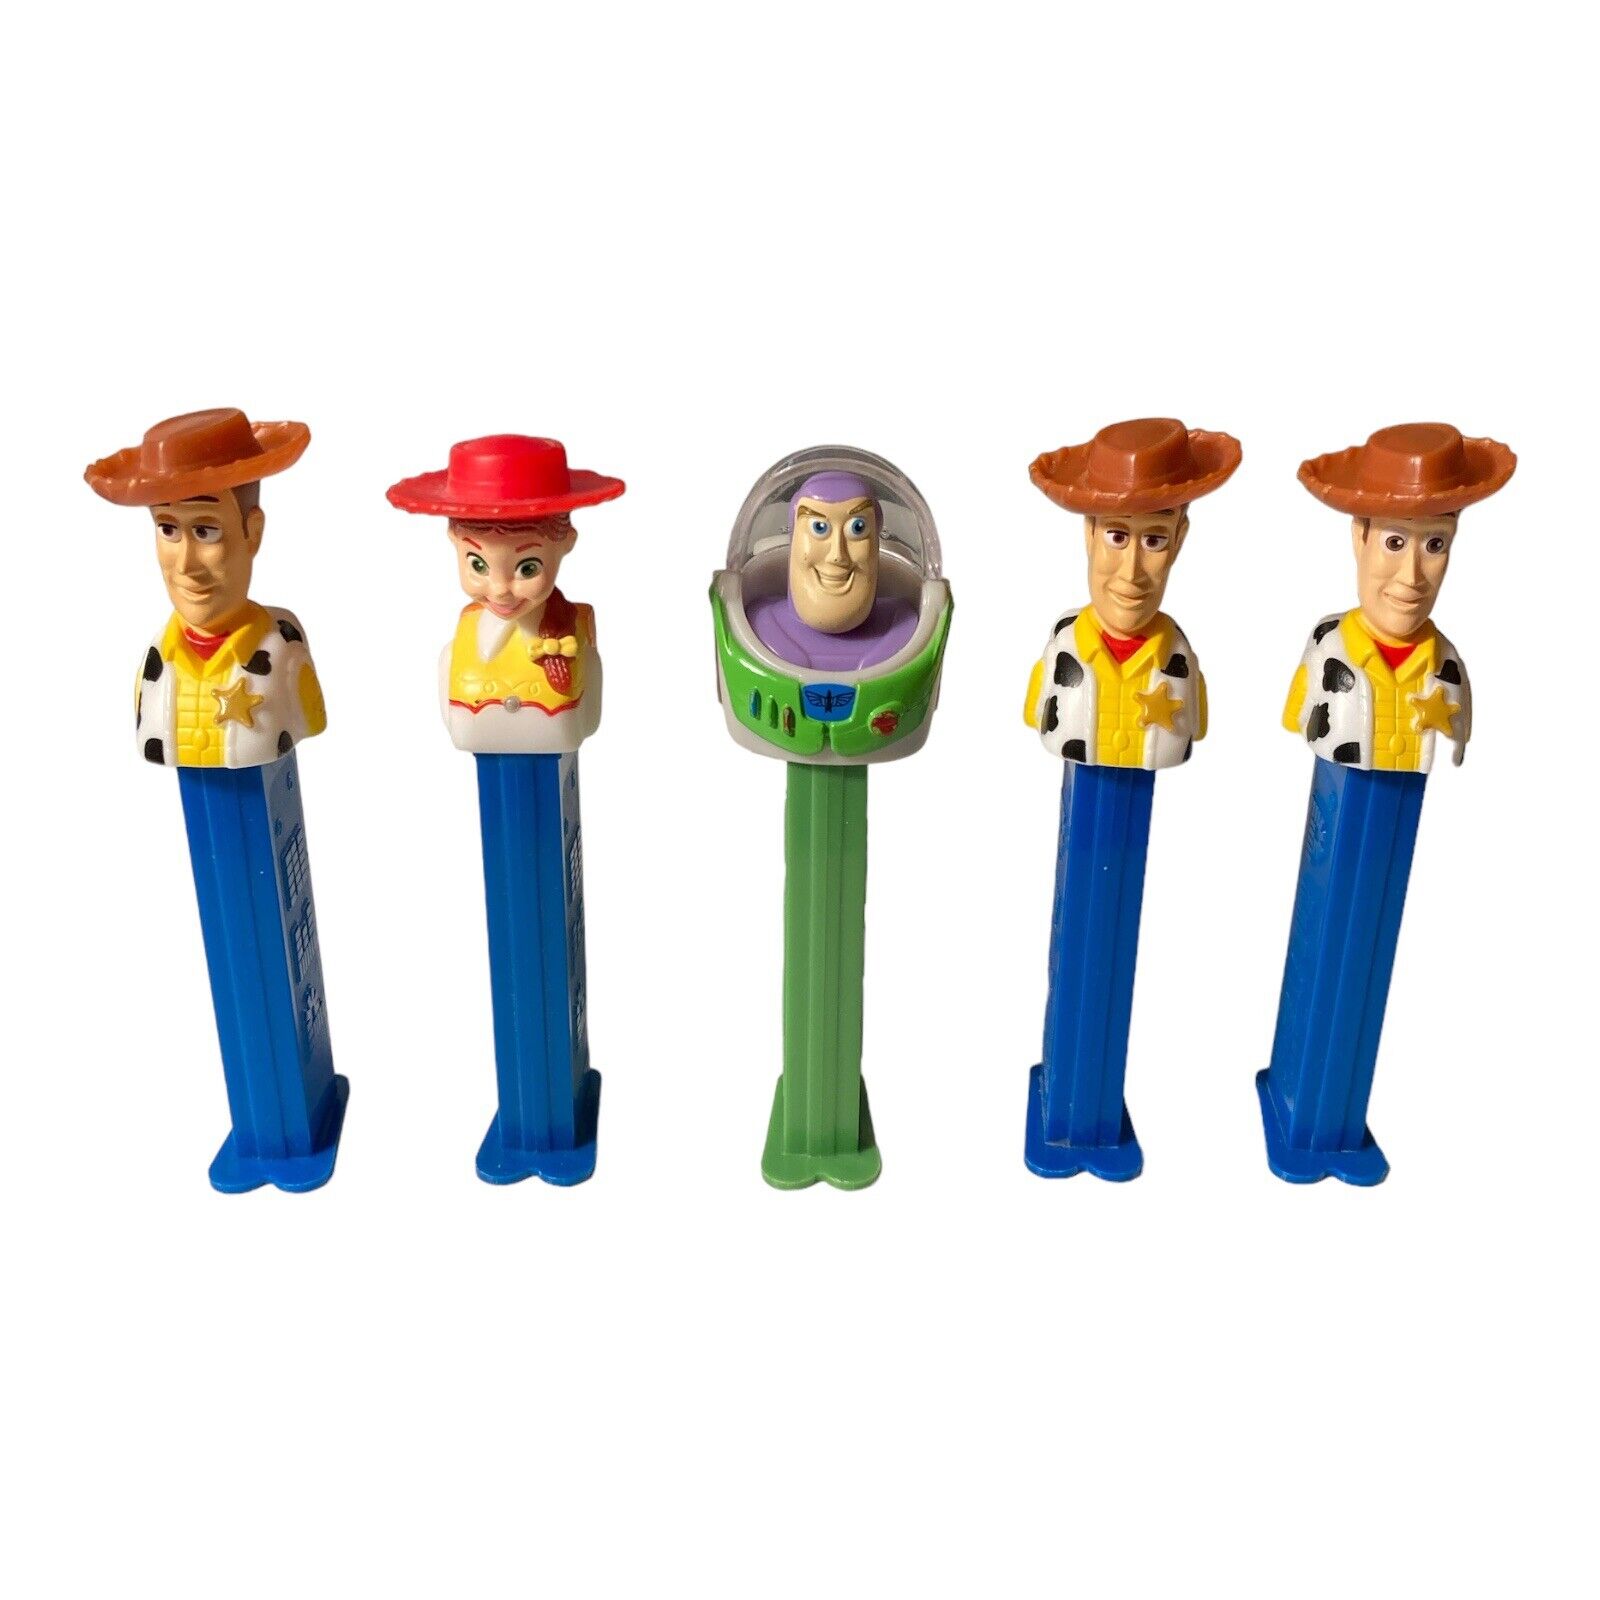 Lot of 5 Disney/Pixar Toy Story Pez Dispensers Woody, Buzz Lightyear, Jesse